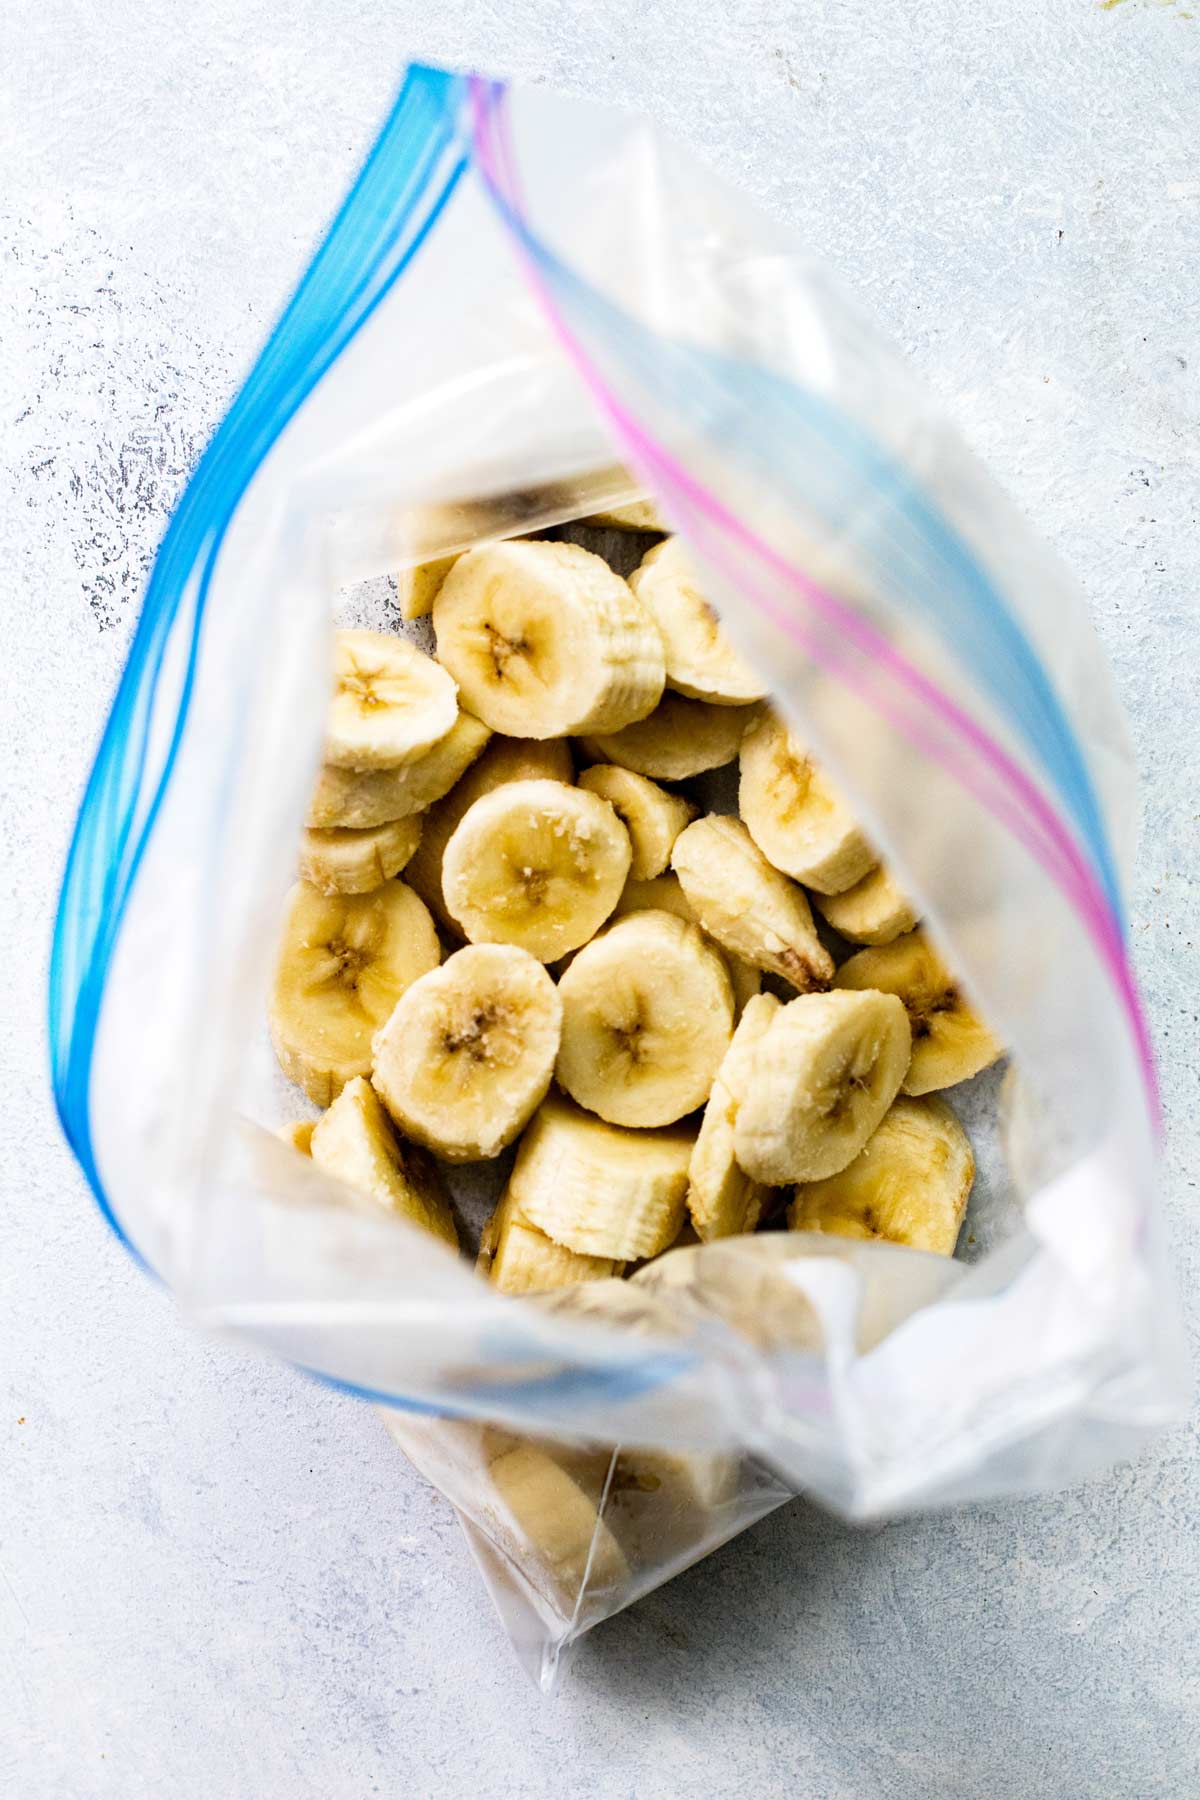 a bag of frozen sliced bananas.